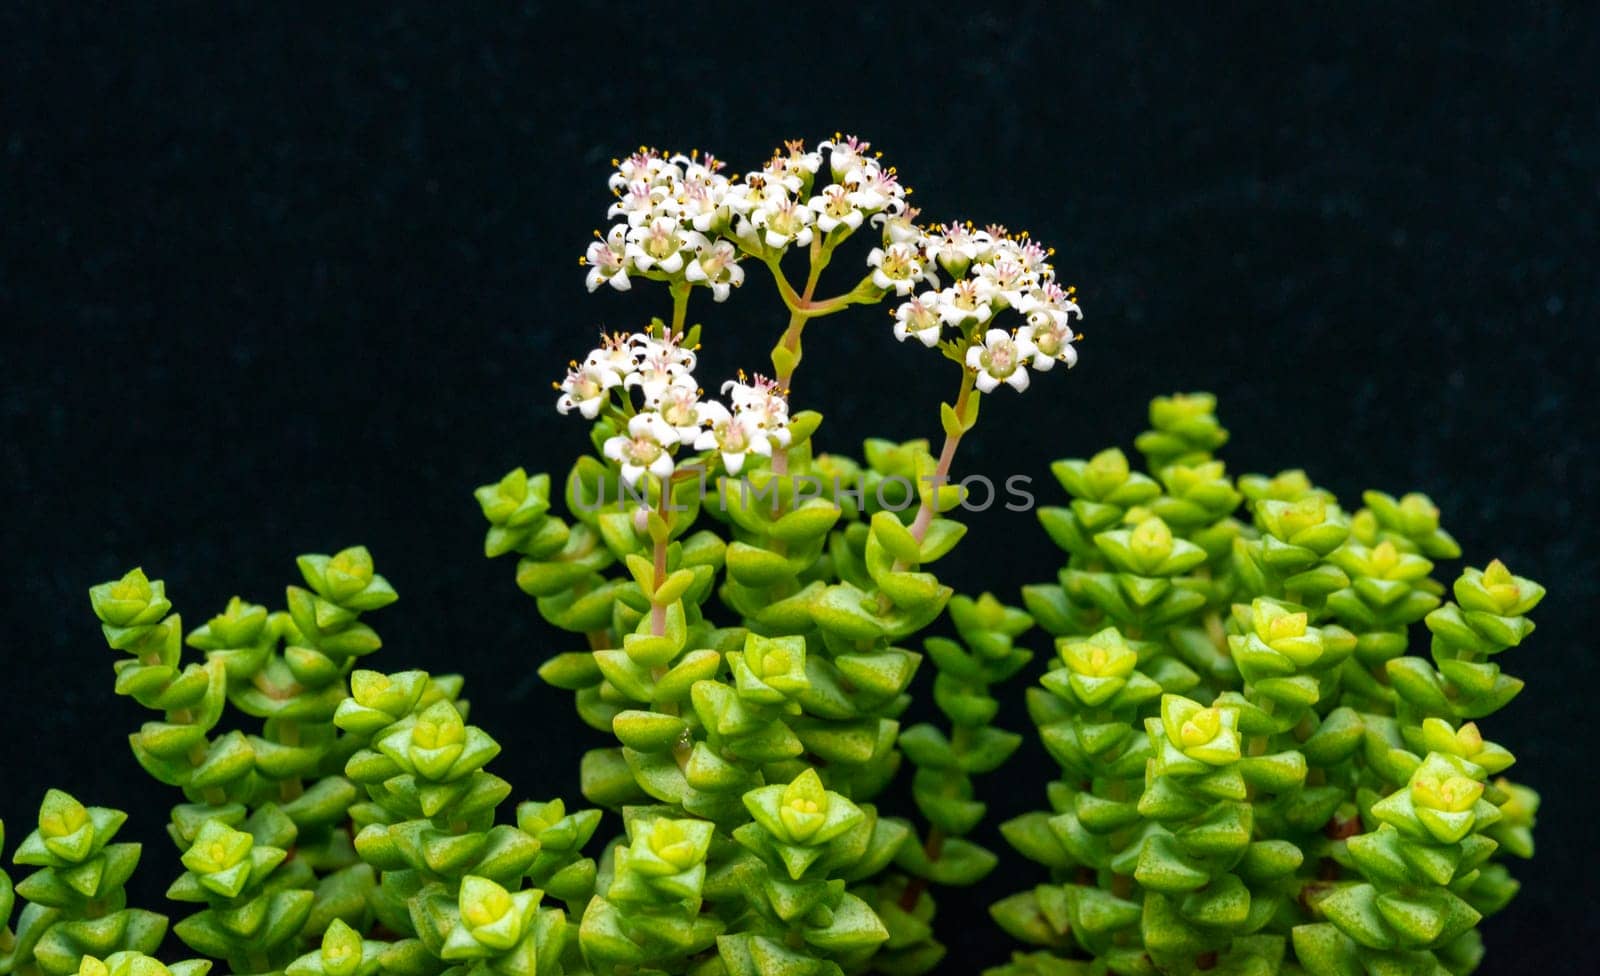 (Crassula rupestris, Crassulaceae) succulent plant with succulent leaves